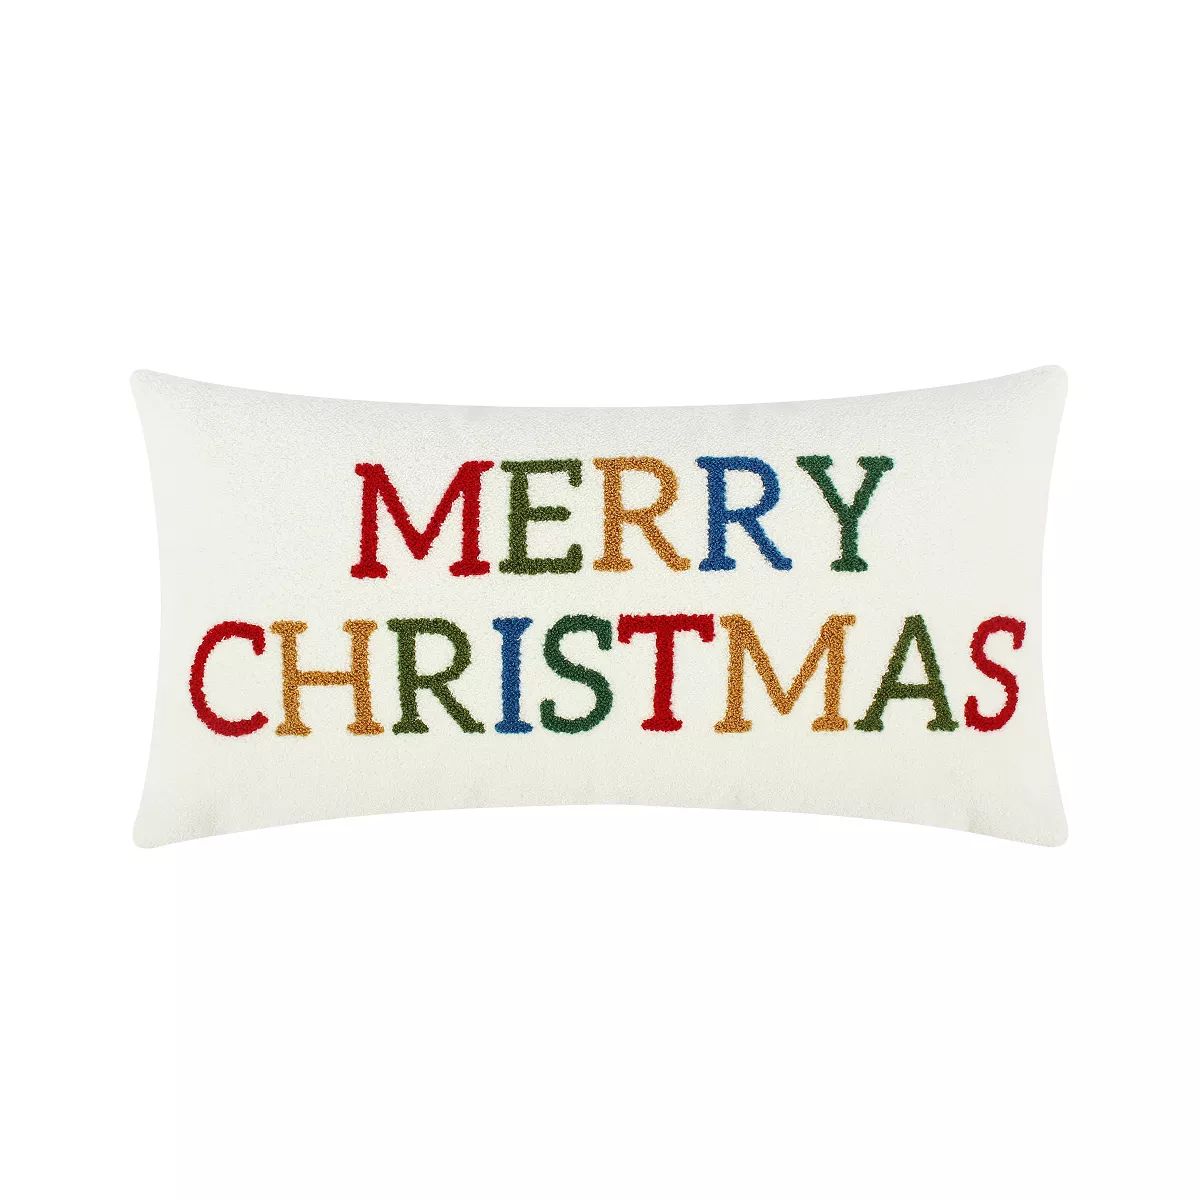 Festive Baubles Merry Christmas Pillow 12x24 -Levtex Home | Target